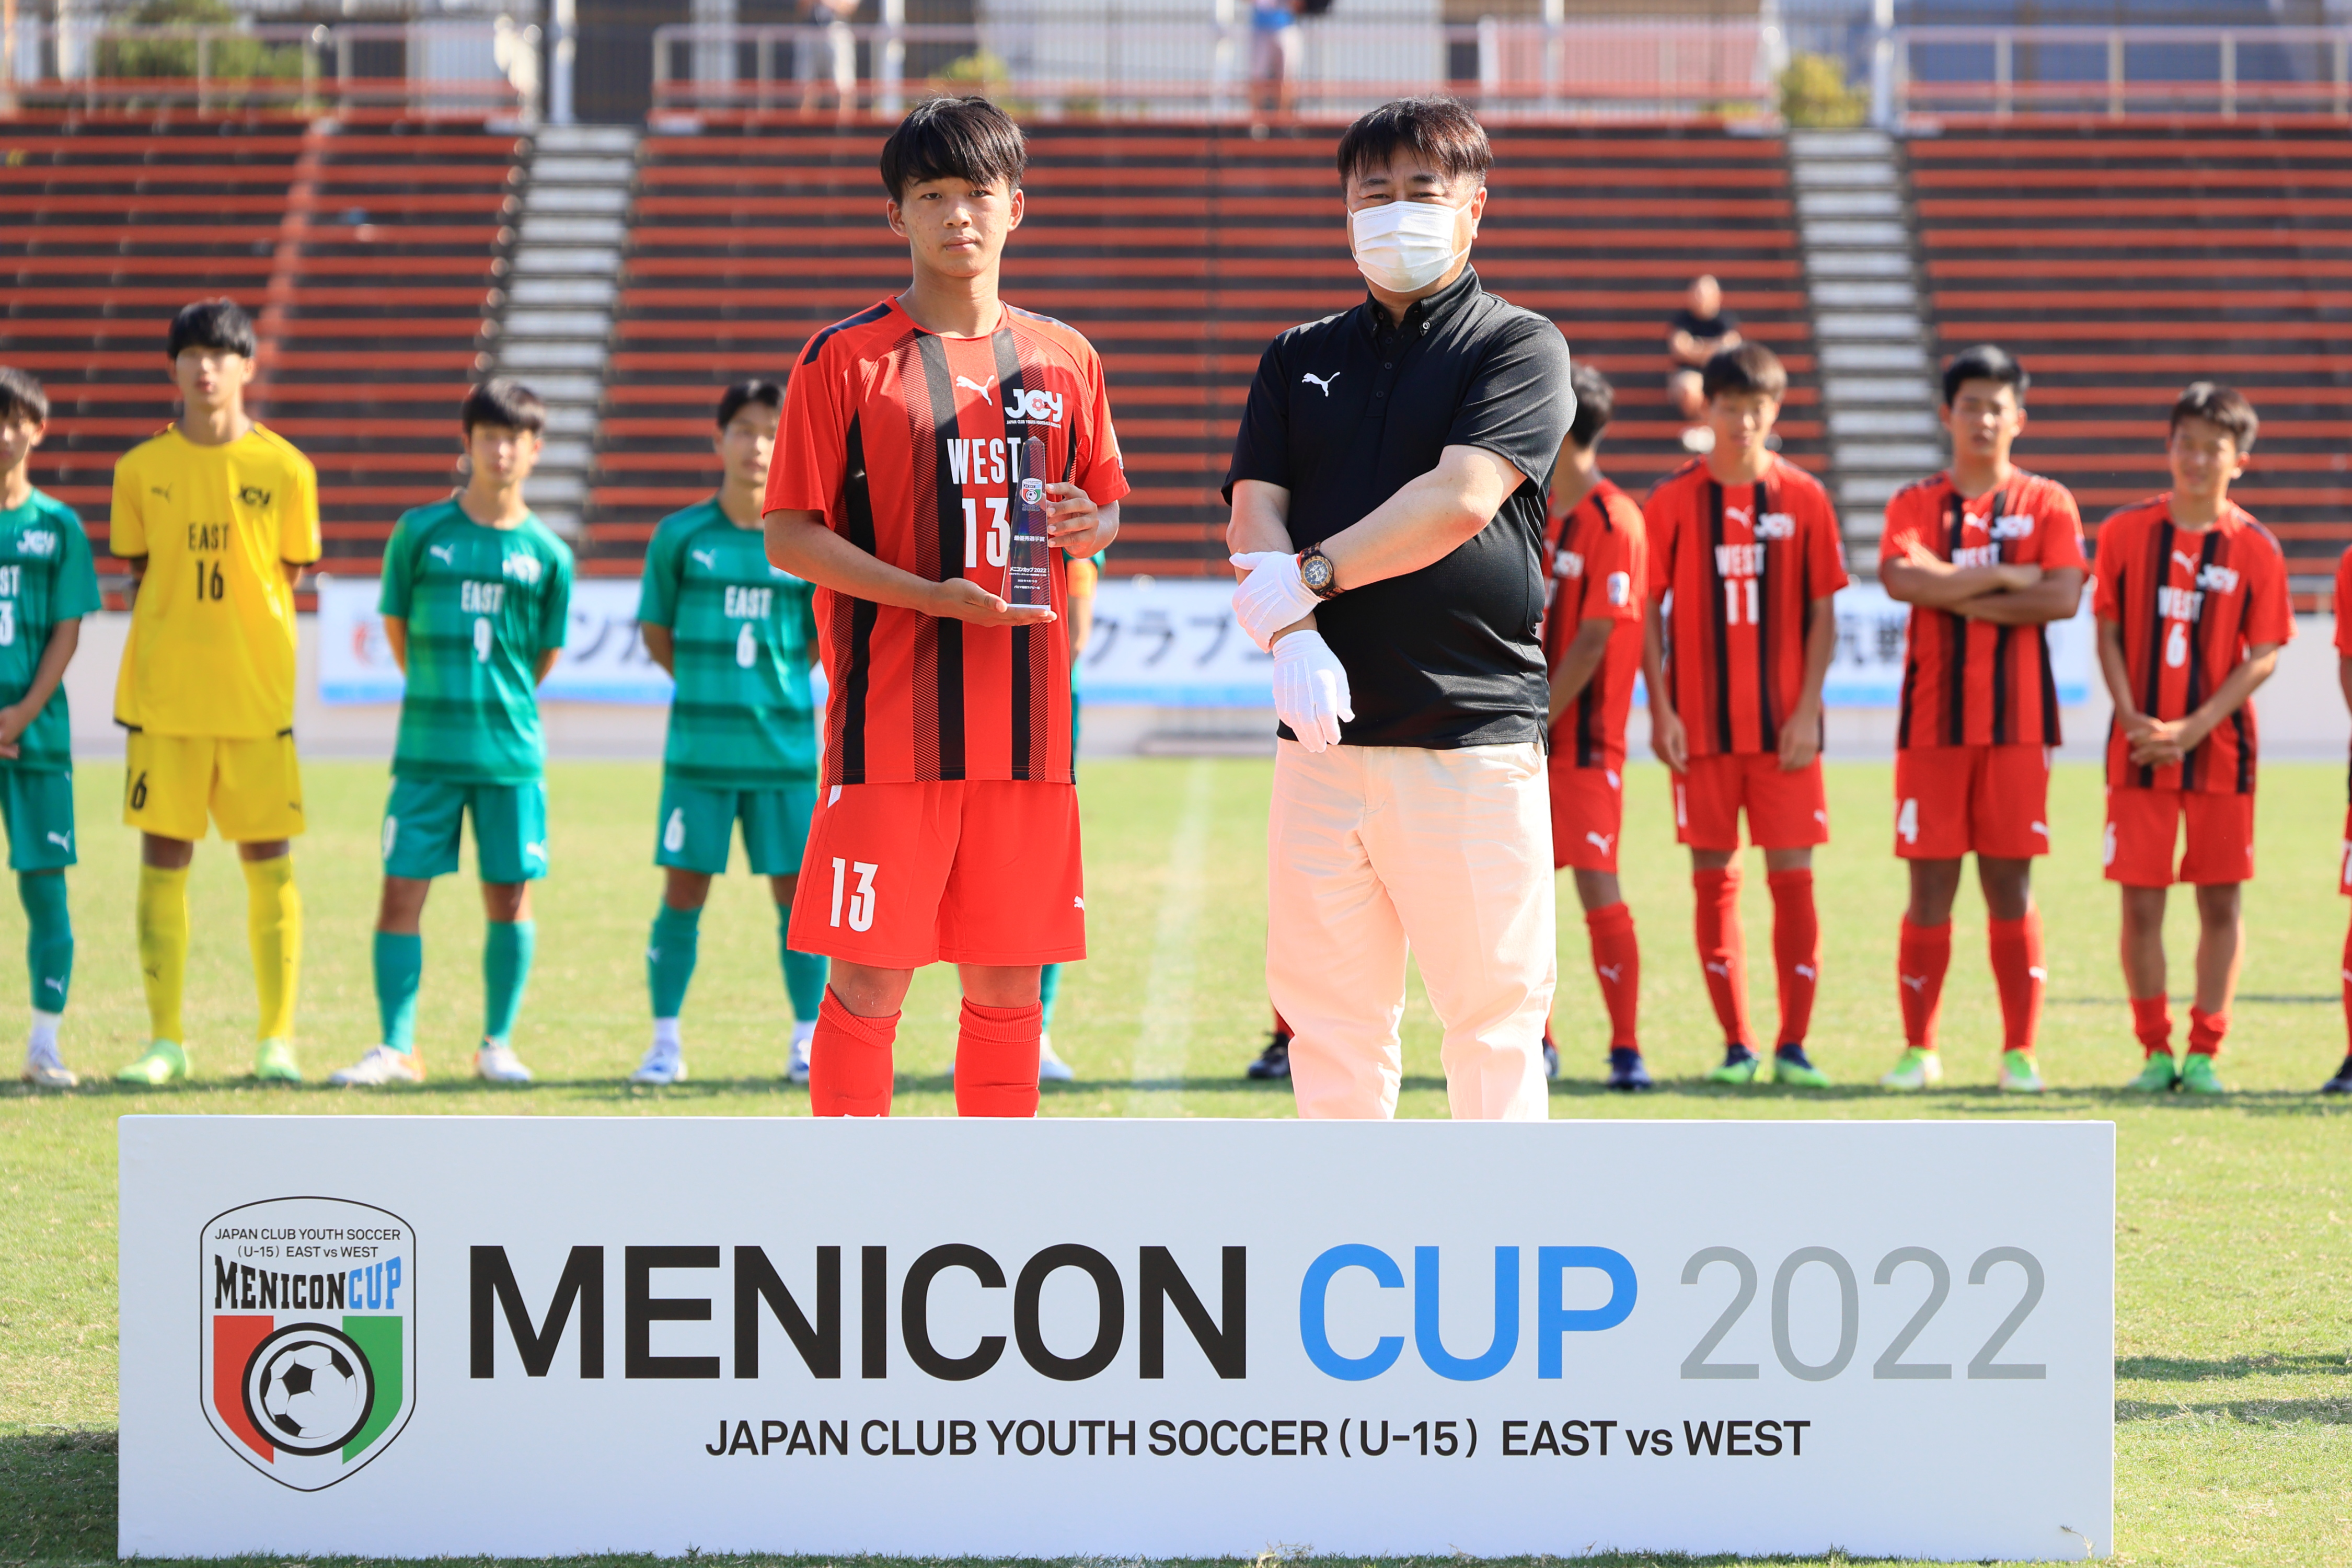 メニコンカップ22 日本クラブユースサッカー東西対抗戦 U 15 結果のお知らせ 株式会社メニコンのプレスリリース